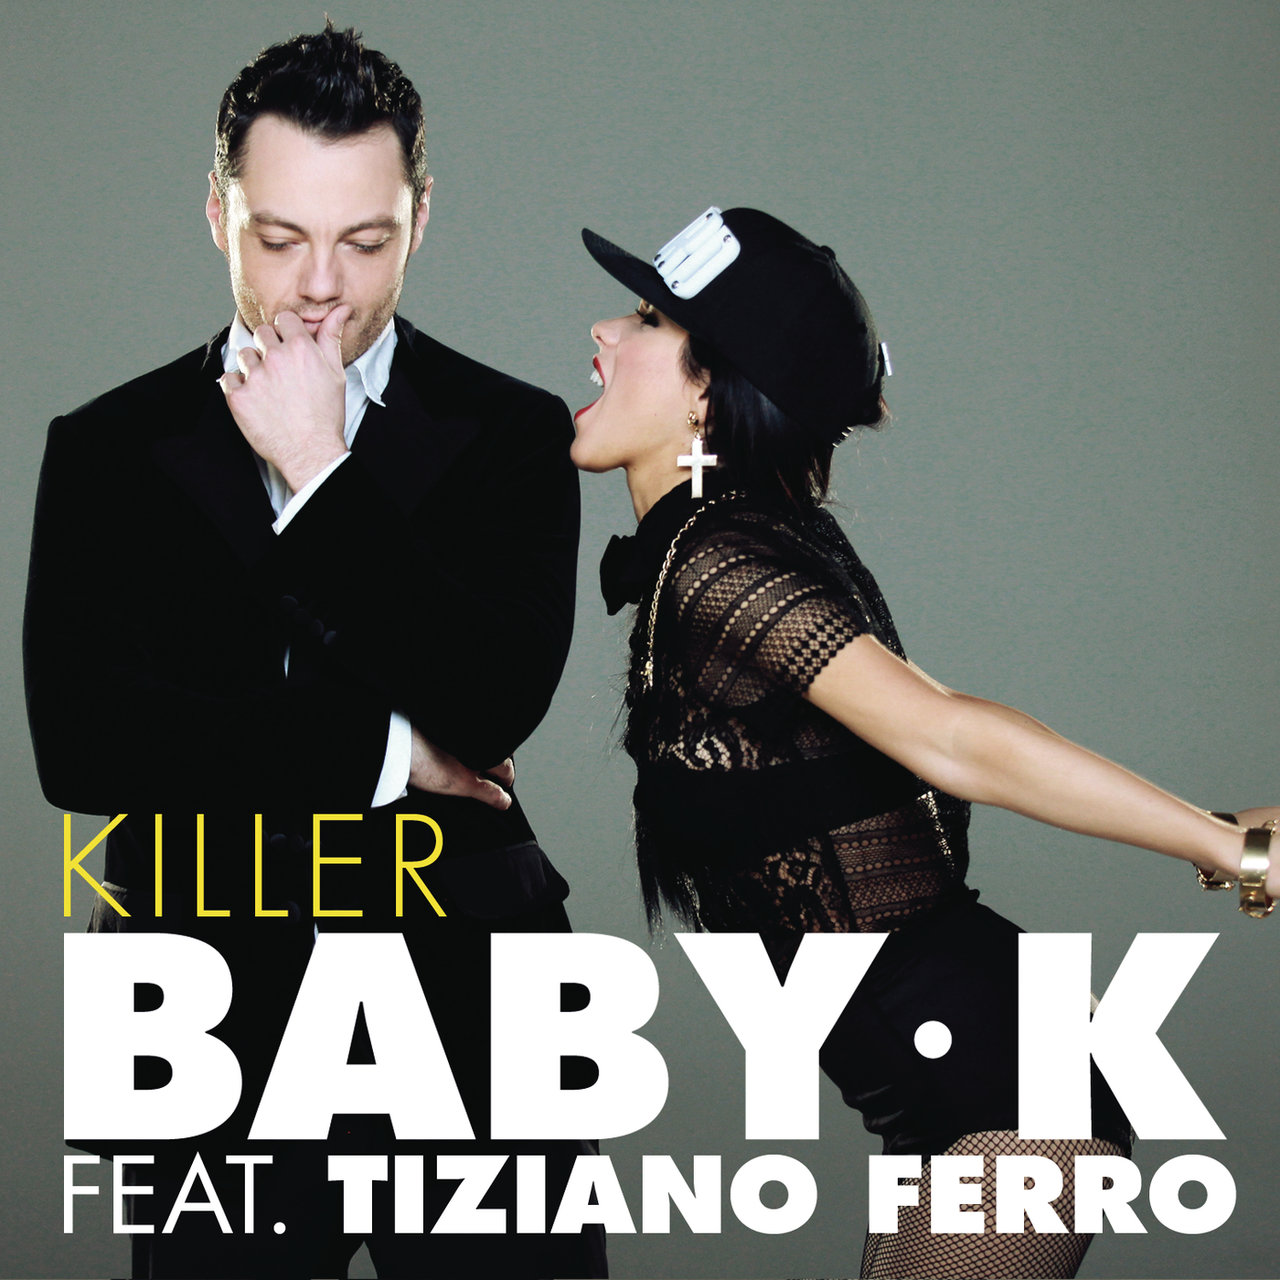 Baby K featuring Tiziano Ferro — Killer cover artwork